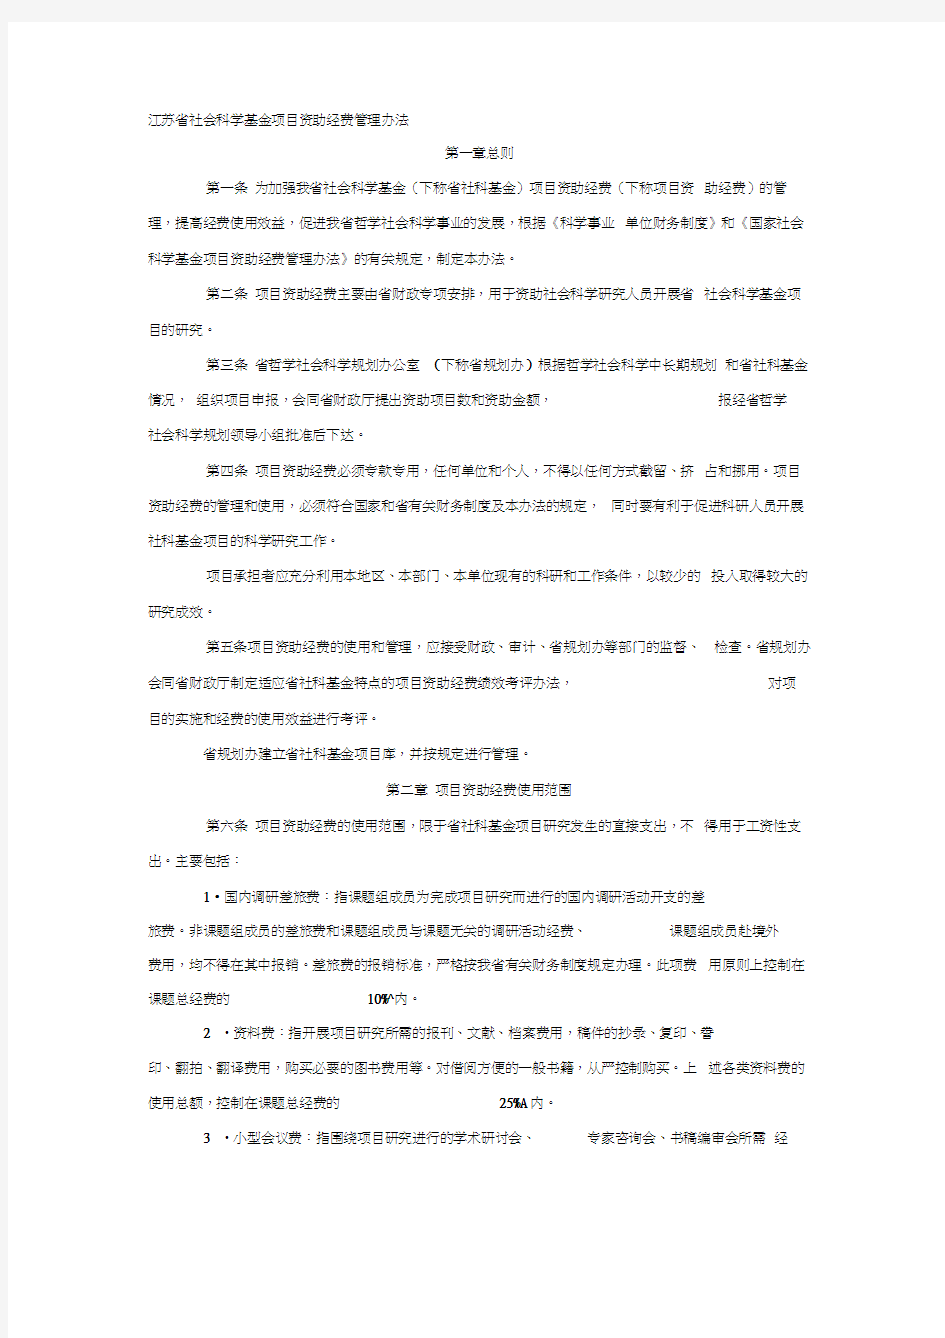 江苏省社会科学基金项目资助经费管理办法